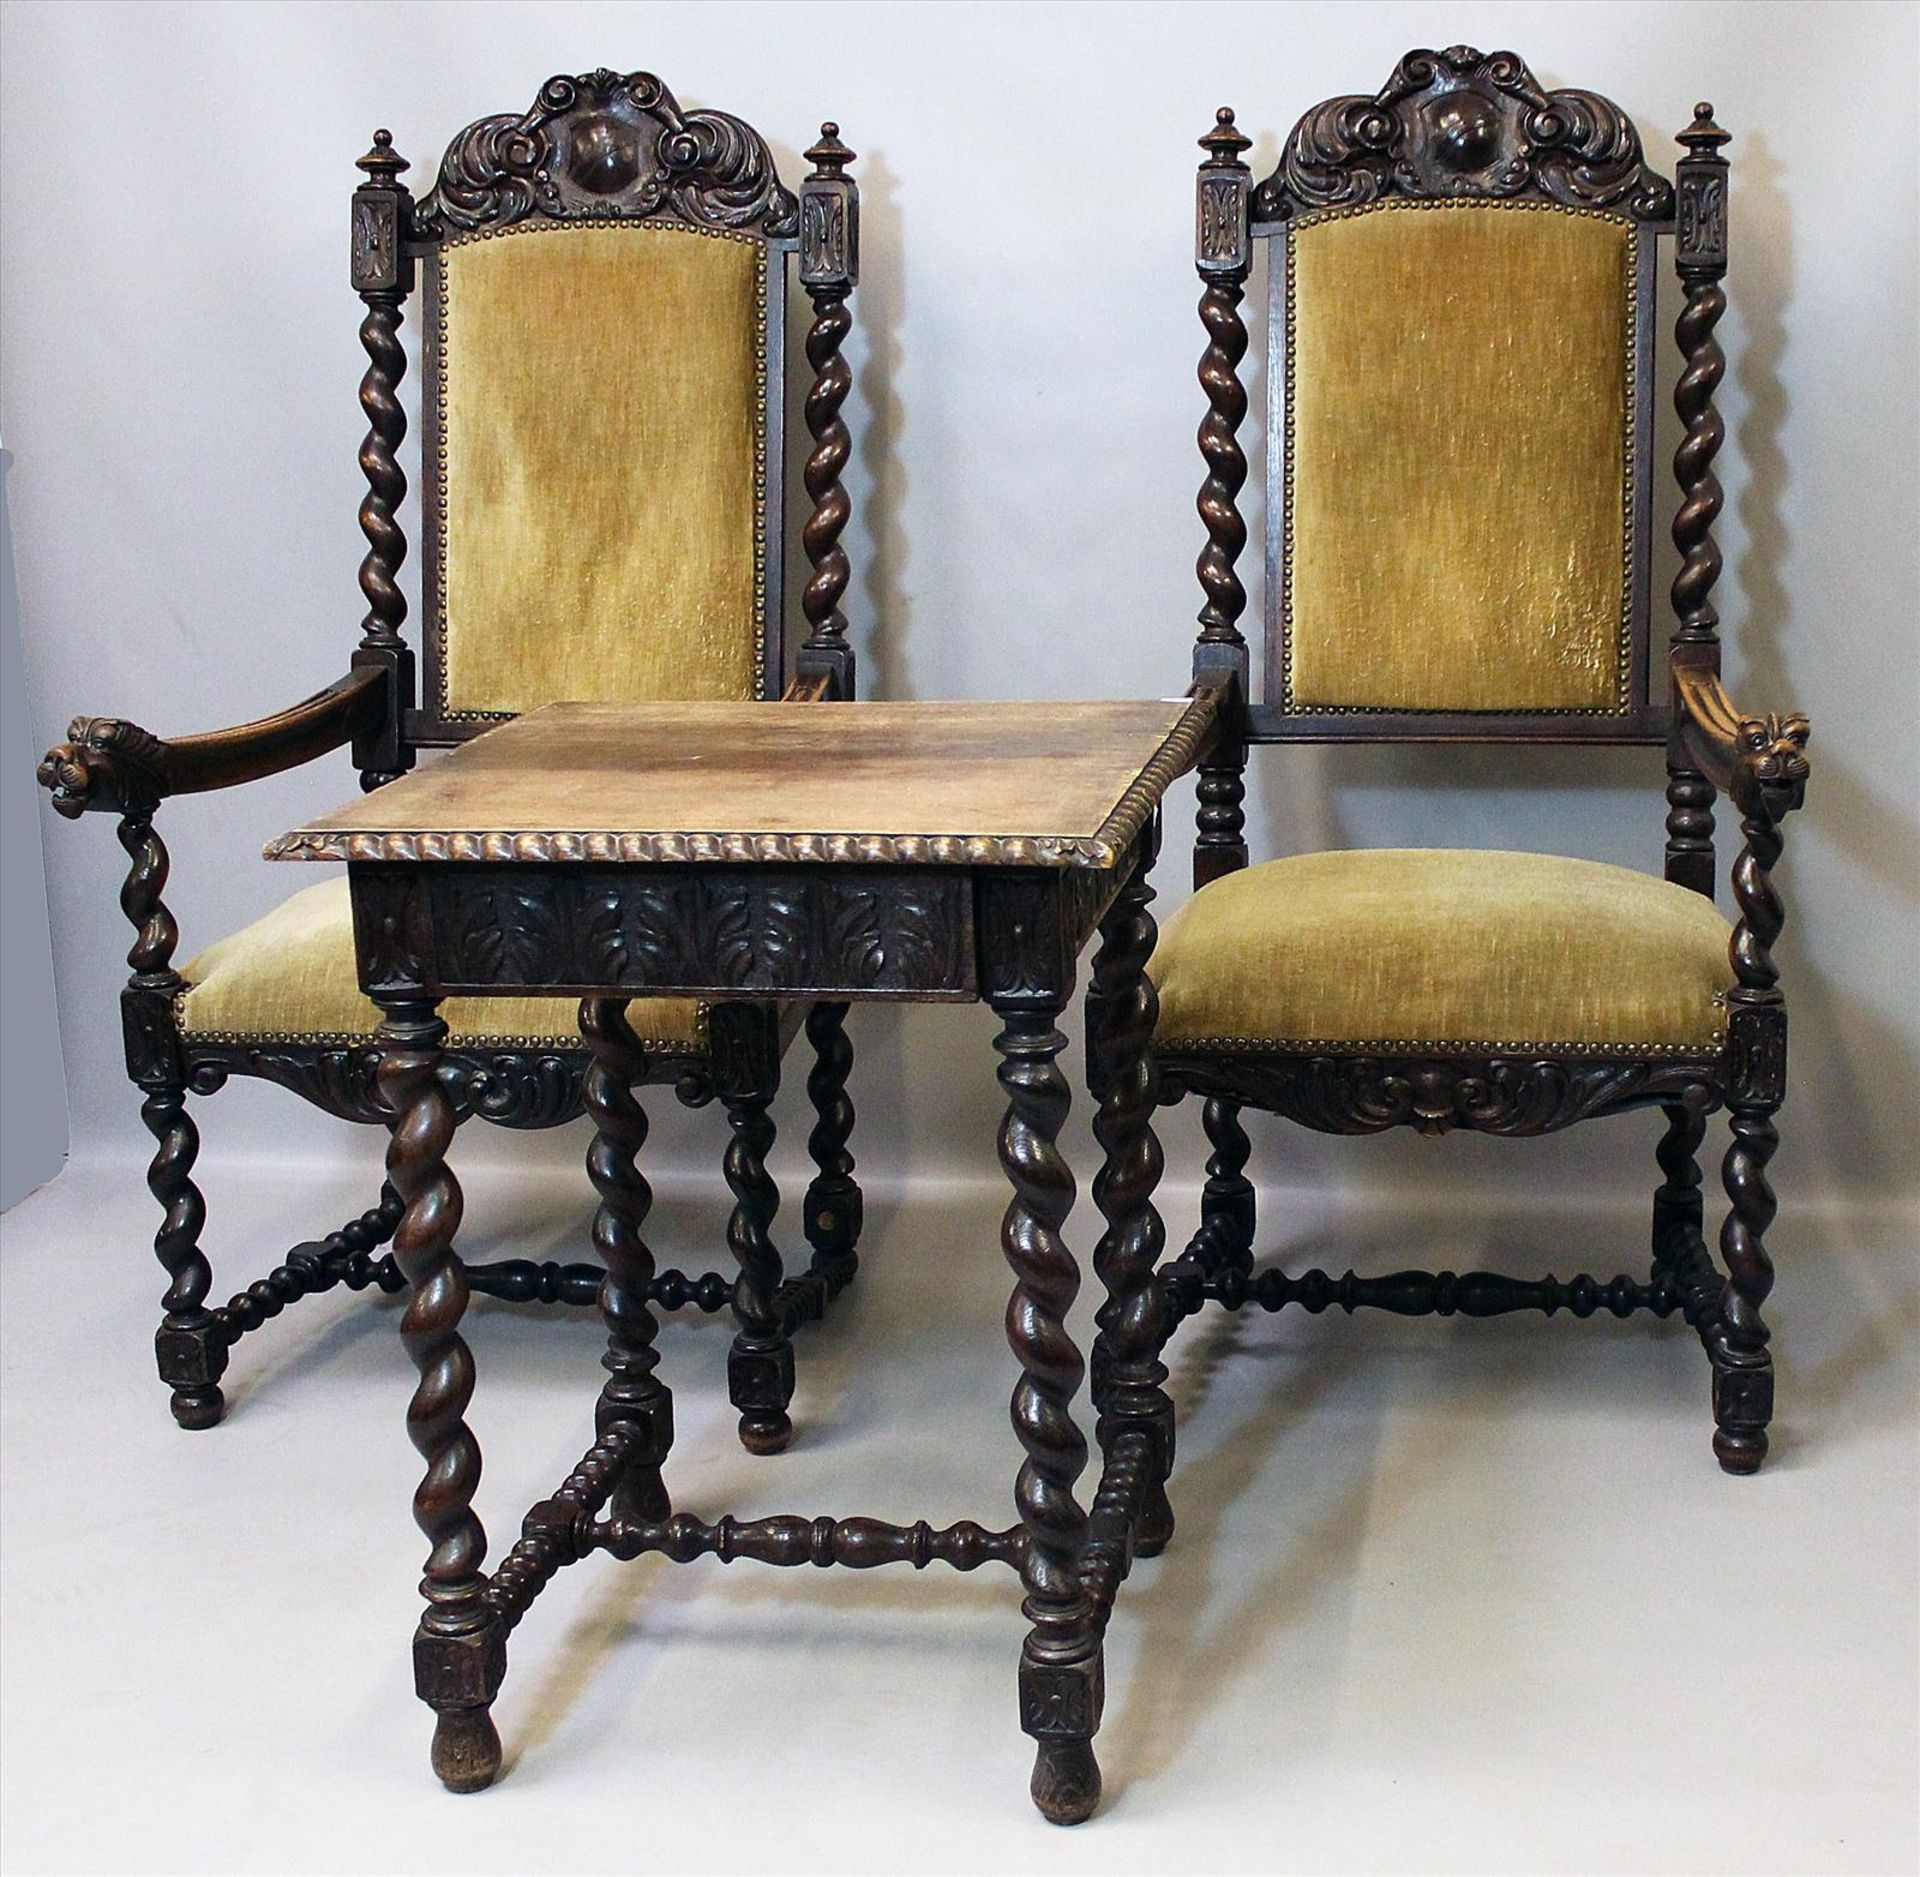 Paar Sessel und Beistelltisch im Barockstil.Eiche. Gedrechselte Gestelle und geschnitzte - Image 2 of 2